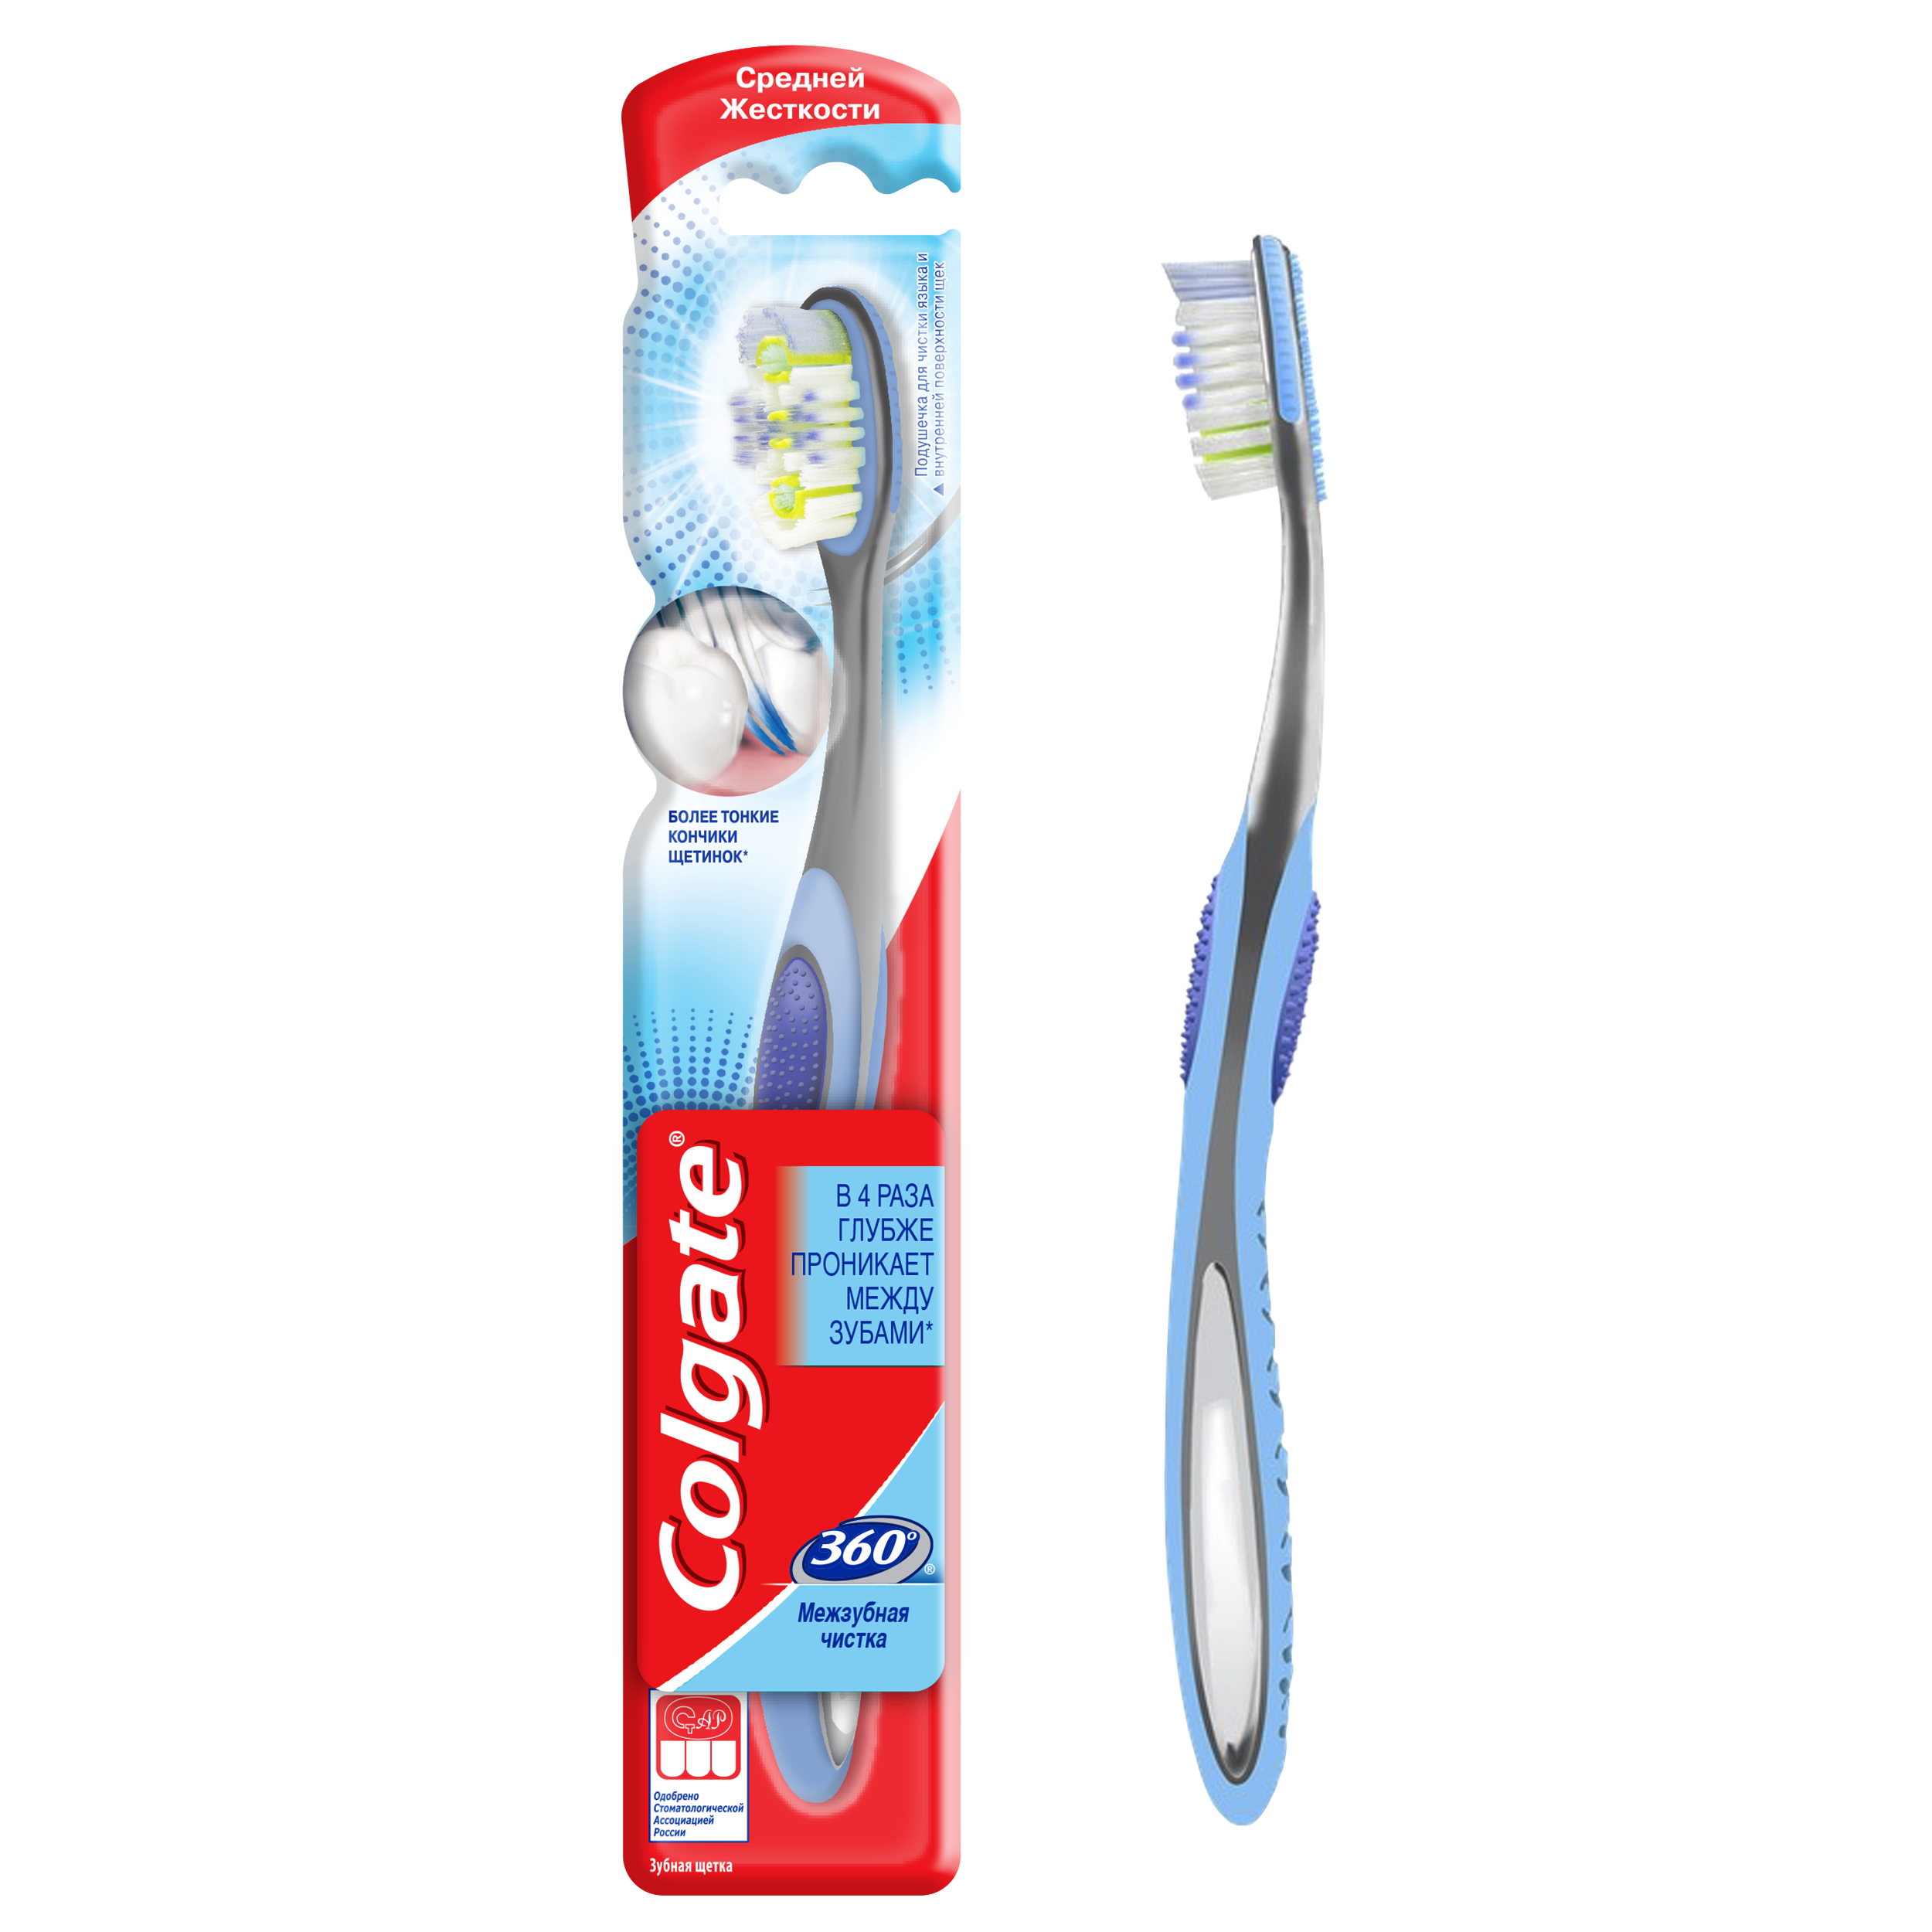 Зубная щетка Colgate 360 Межзубная чистка средняя